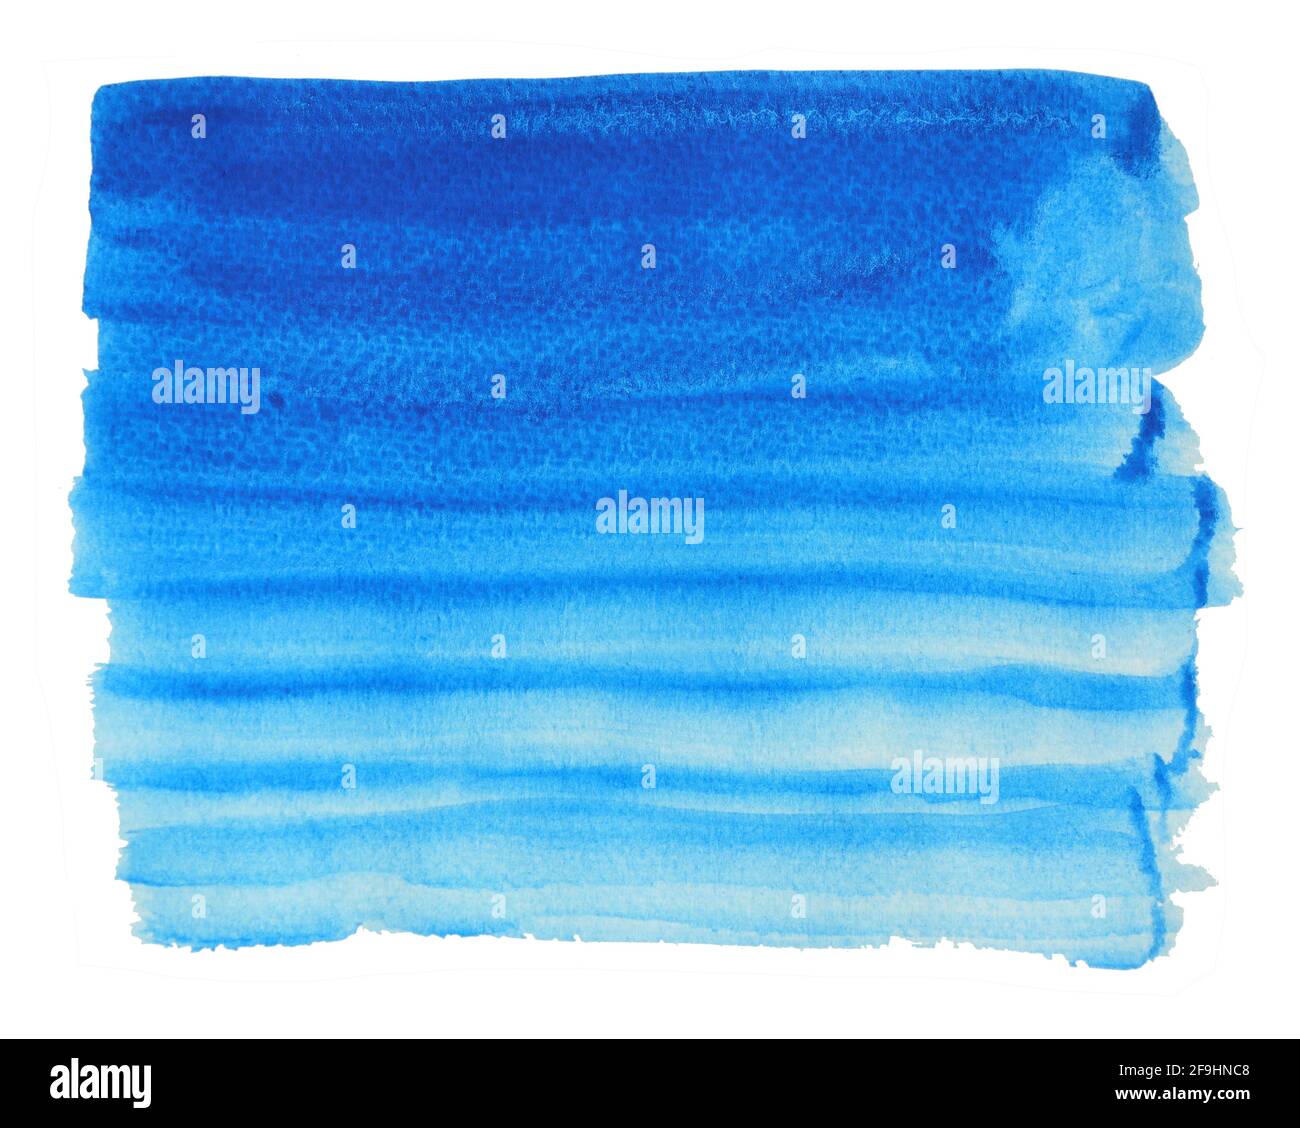 Dégradé de couleurs de l'obscur au clair , de bleuissement de la circulation sur la surface blanche , Illustration résumé et arrière-plan lumineux de la main à l'aquarelle dessiner sur papier Banque D'Images